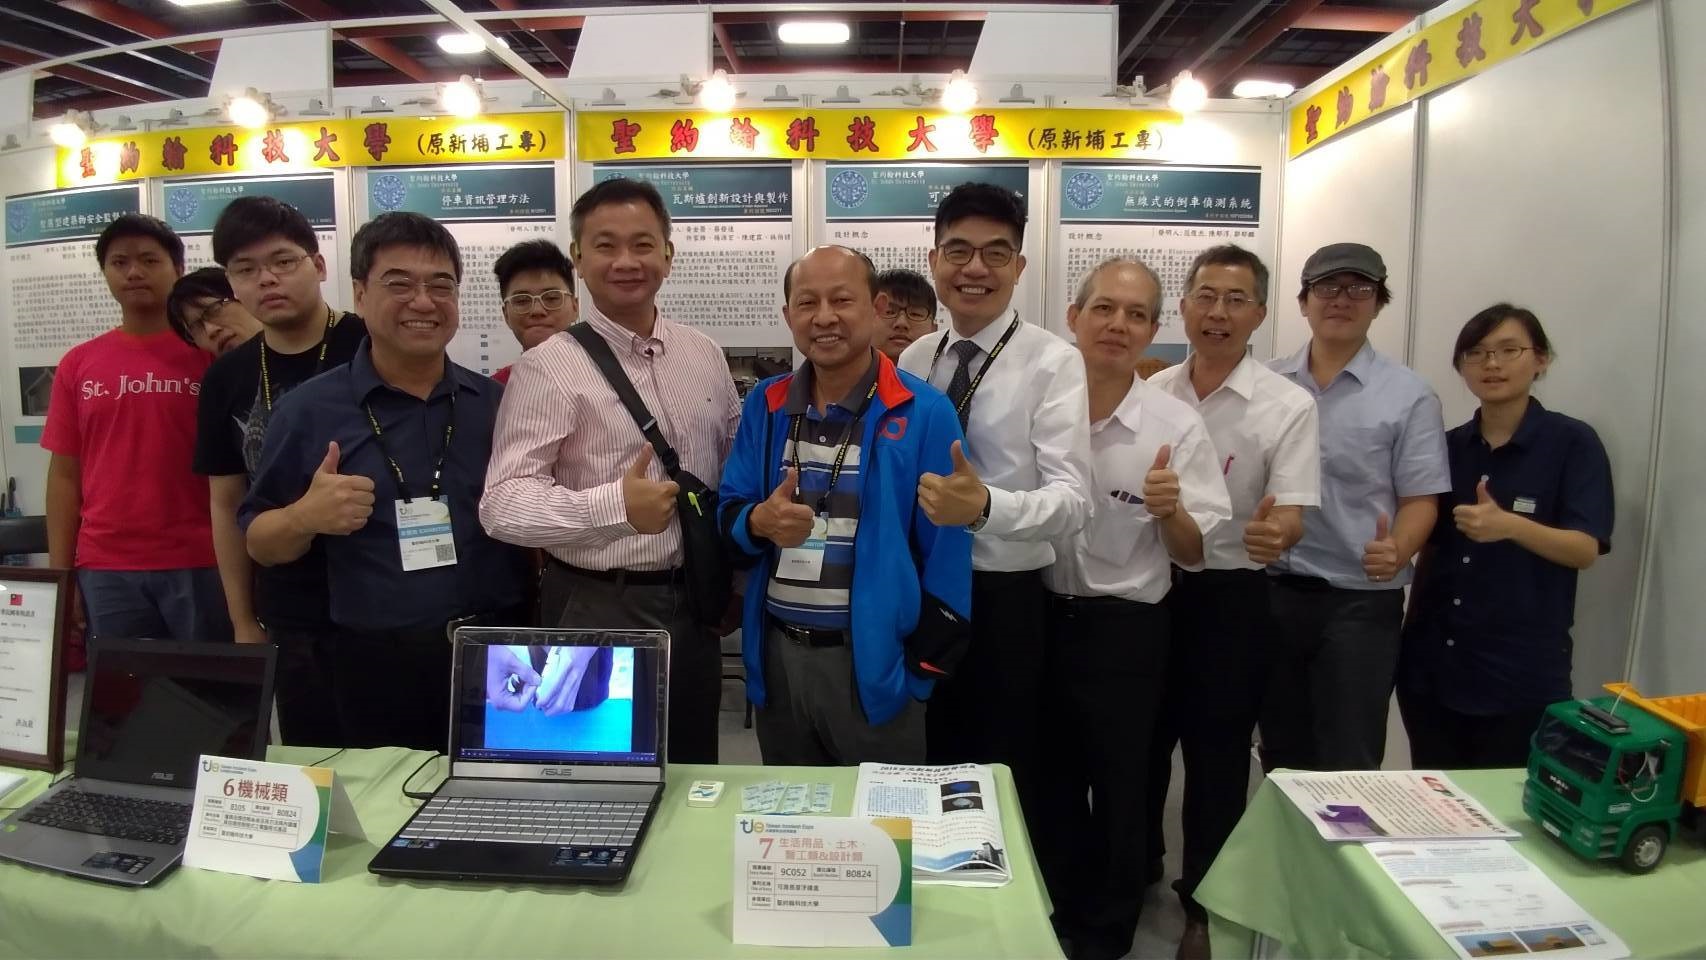 聖約翰科技大學參加2018 台灣創新技術博覽會（原台北國際發明暨技術交易展），以1銀2銅的佳績展現學校師生研發實力